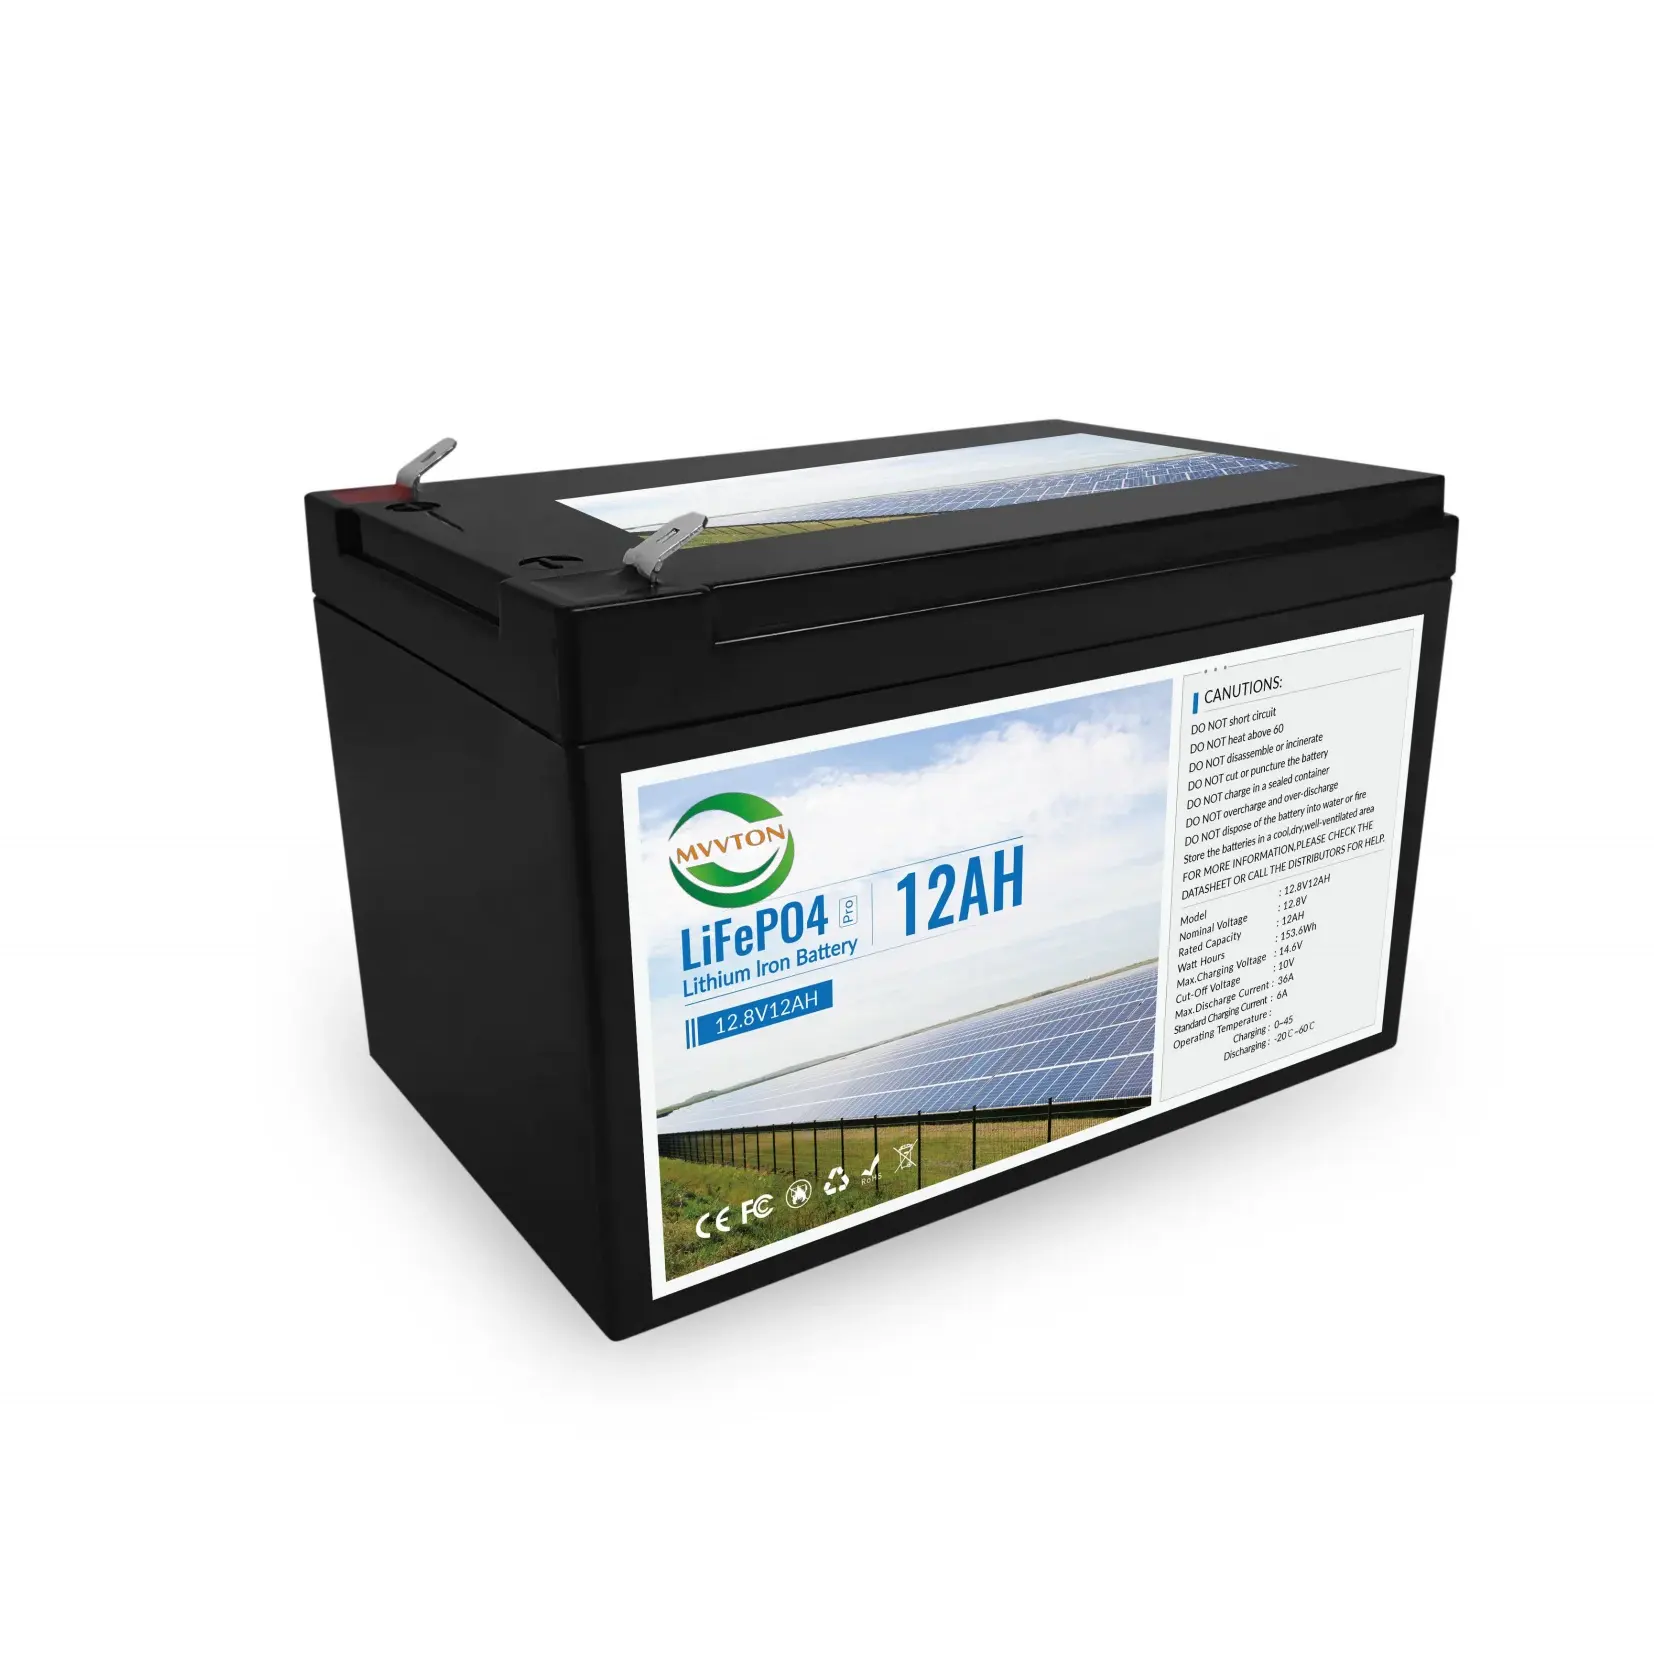 에너지 저장 차량용 가전 제품 40Ah 용 고급 12V 리튬 이온 배터리 전동 공구 ROH 인증